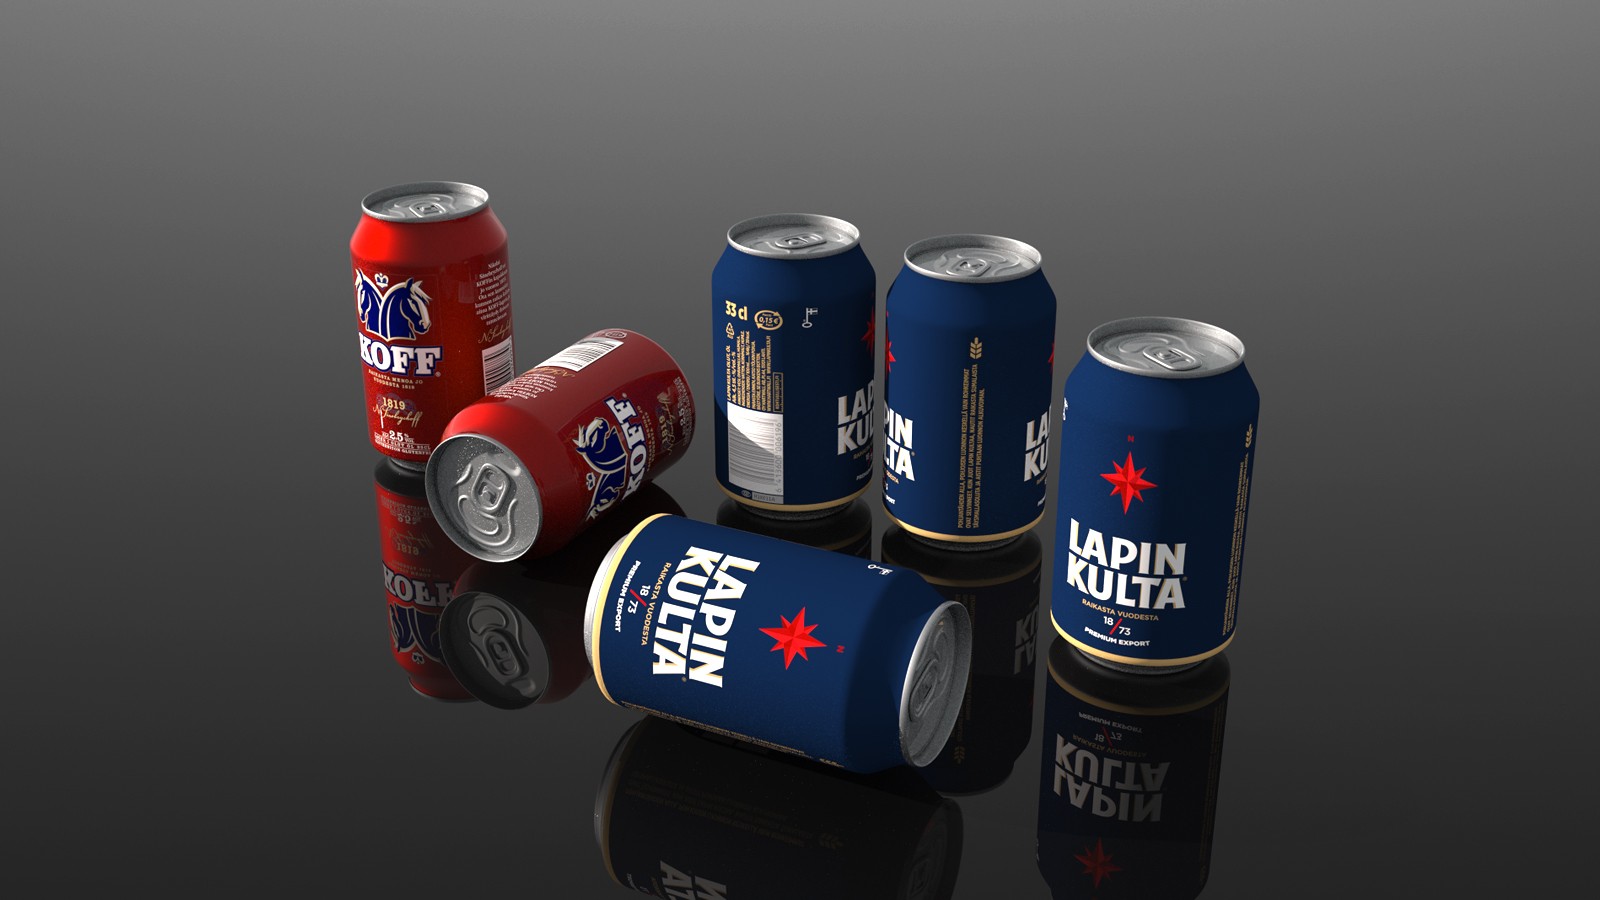 KOFF / LAPIN KULTA beer cans